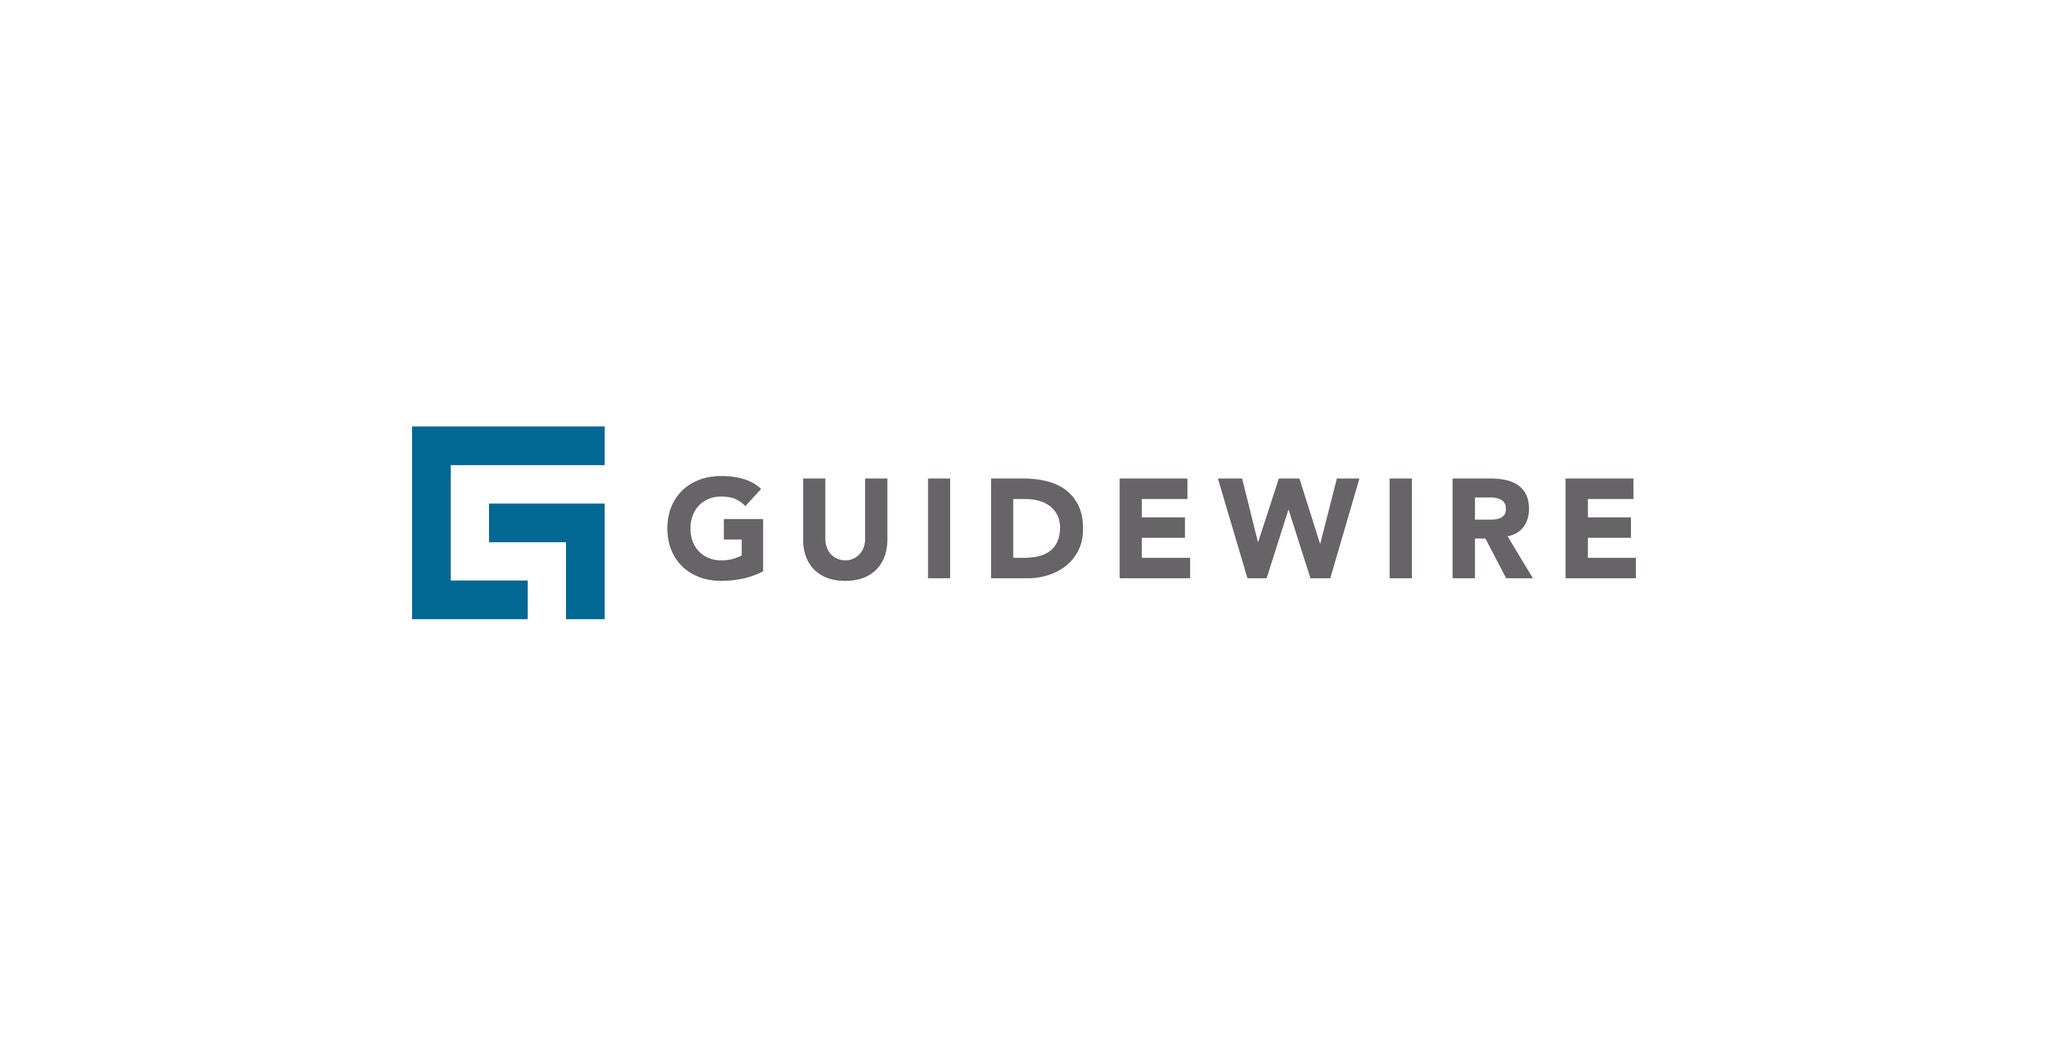  Guidewire logo color print